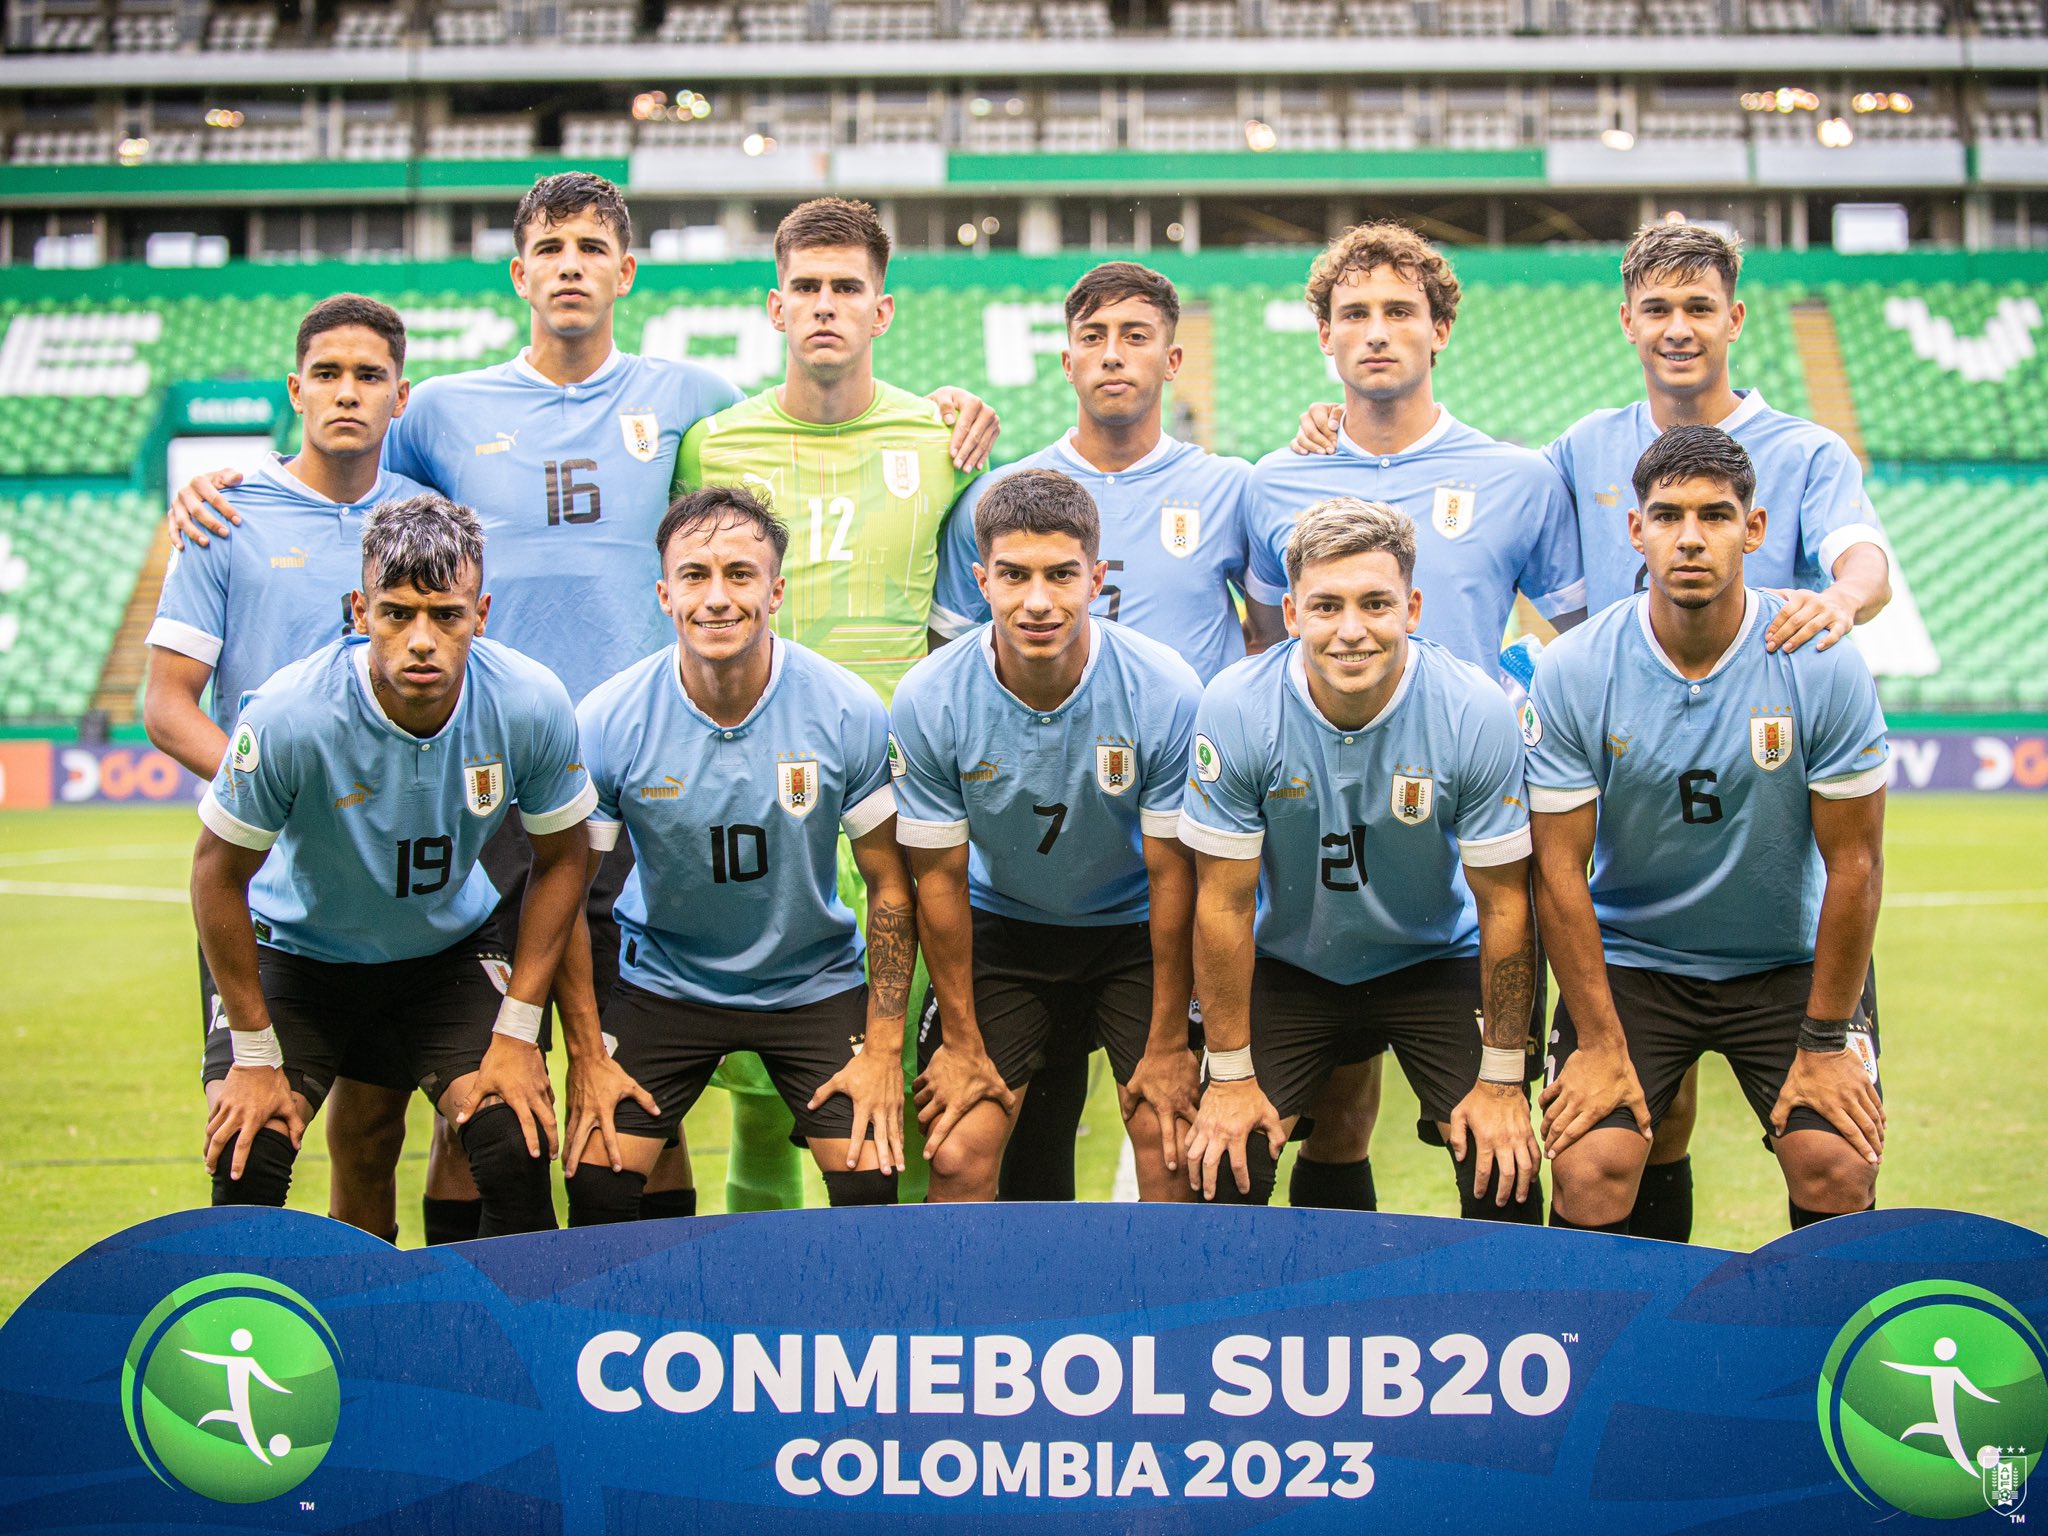 Uruguay 30 Venezuela en su segundo partido en la CONMEBOL SUB20 AUF